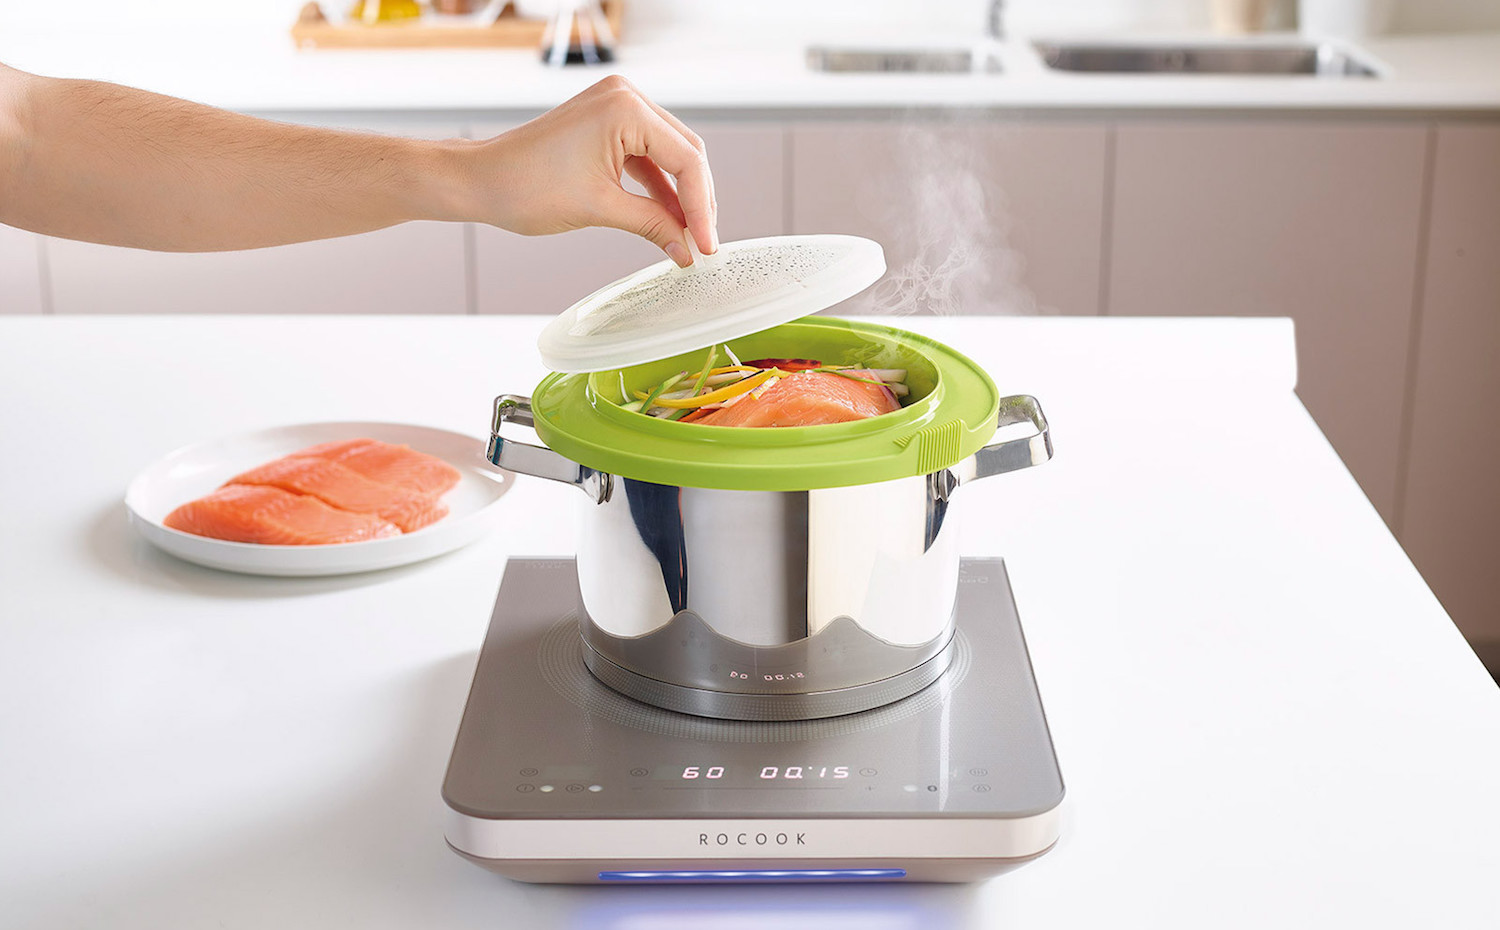 La vaporera de Lékué consigue cocinar alimentos delicados con vapor a temperatura controlada y sin añadir ningún tipo de grasa